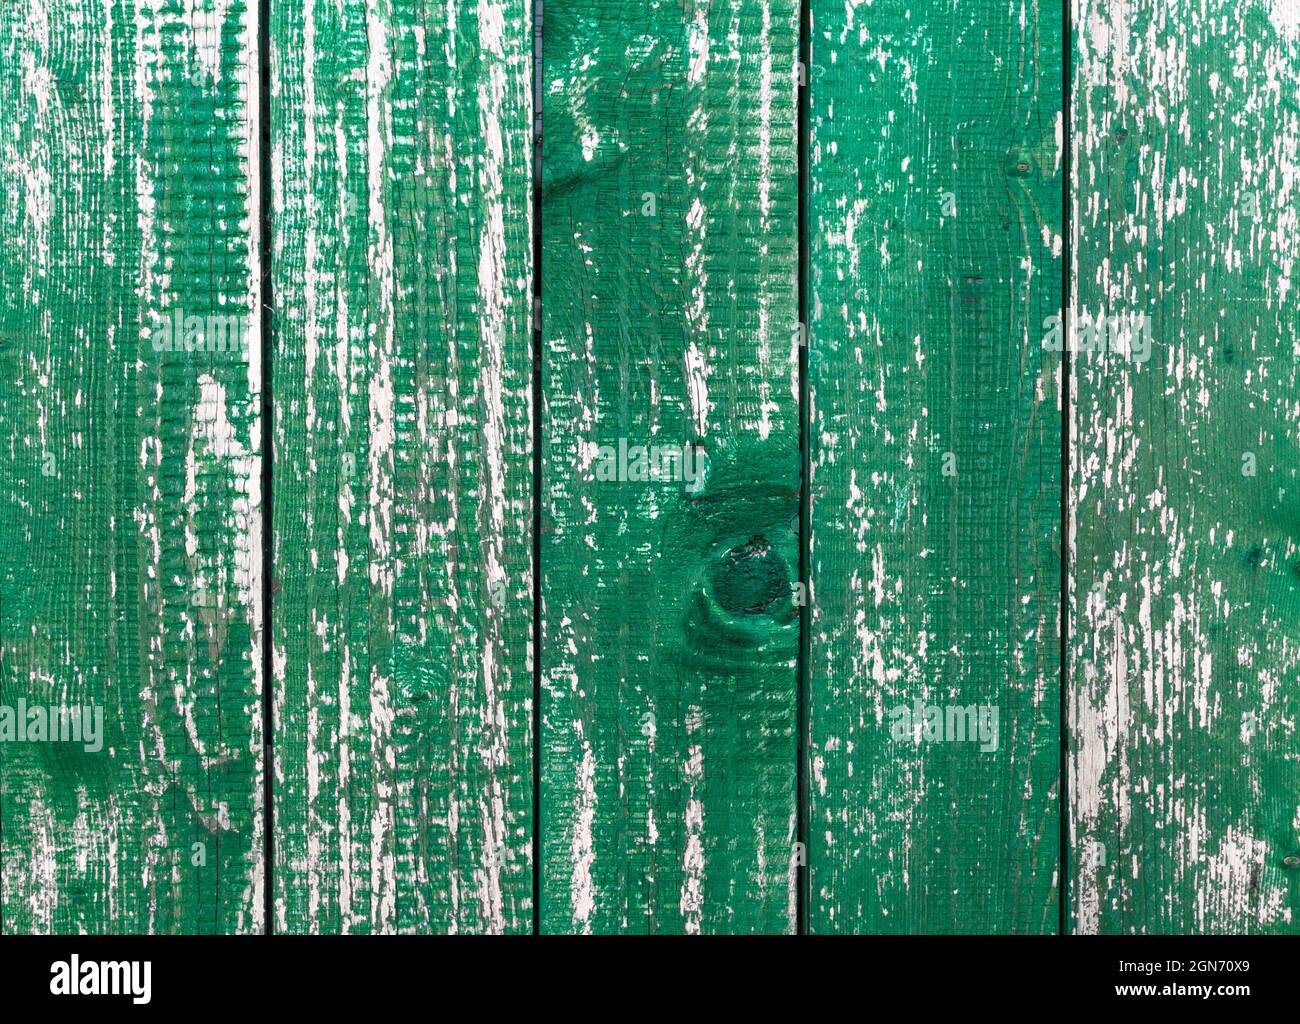 Planches vertes en bois. Arrière-plan composé de planches en bois, avec peinture verte peeling. Banque D'Images